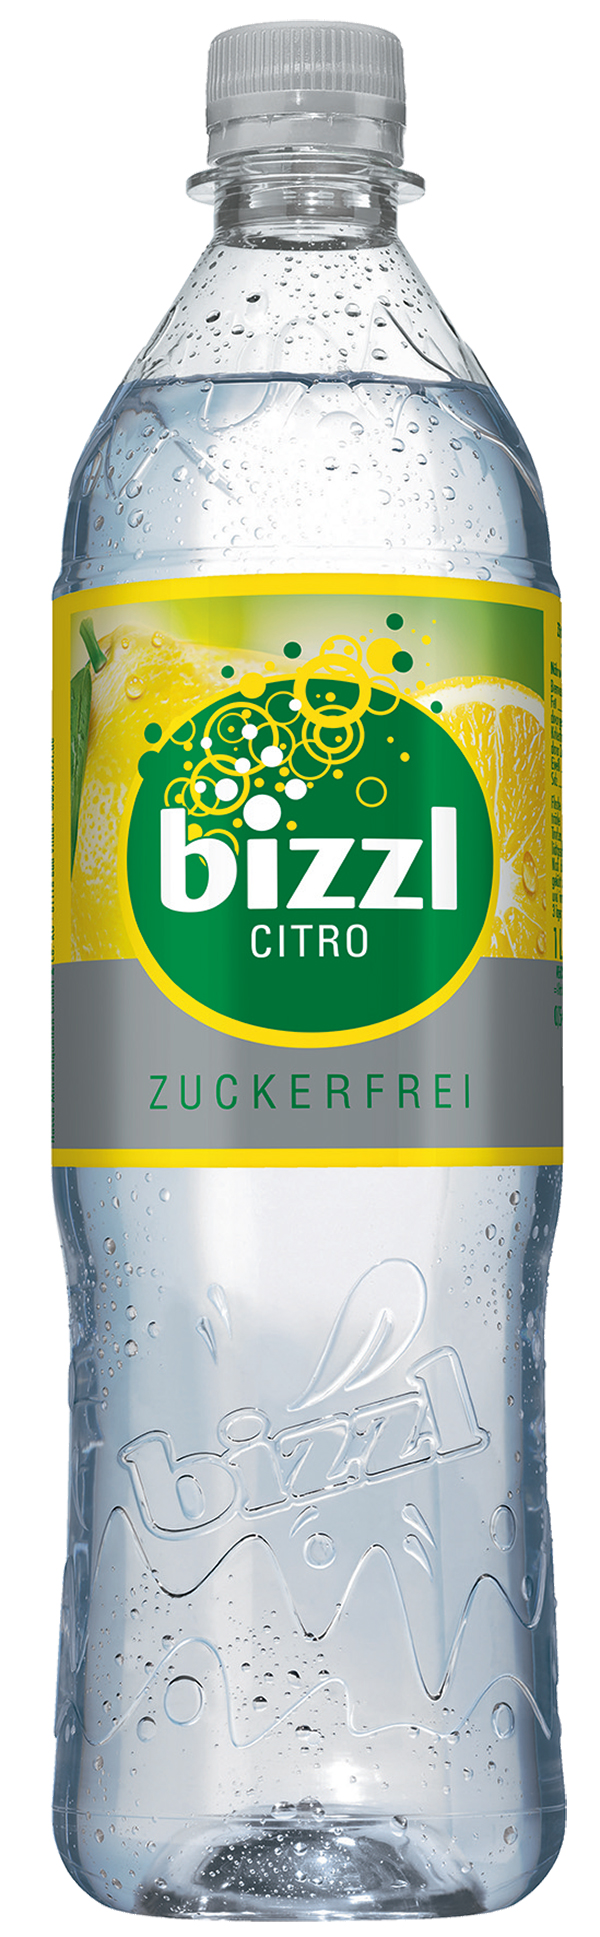 Bizzl Citro Limonade Zuckerfrei 12 x 1,0 l (PET)